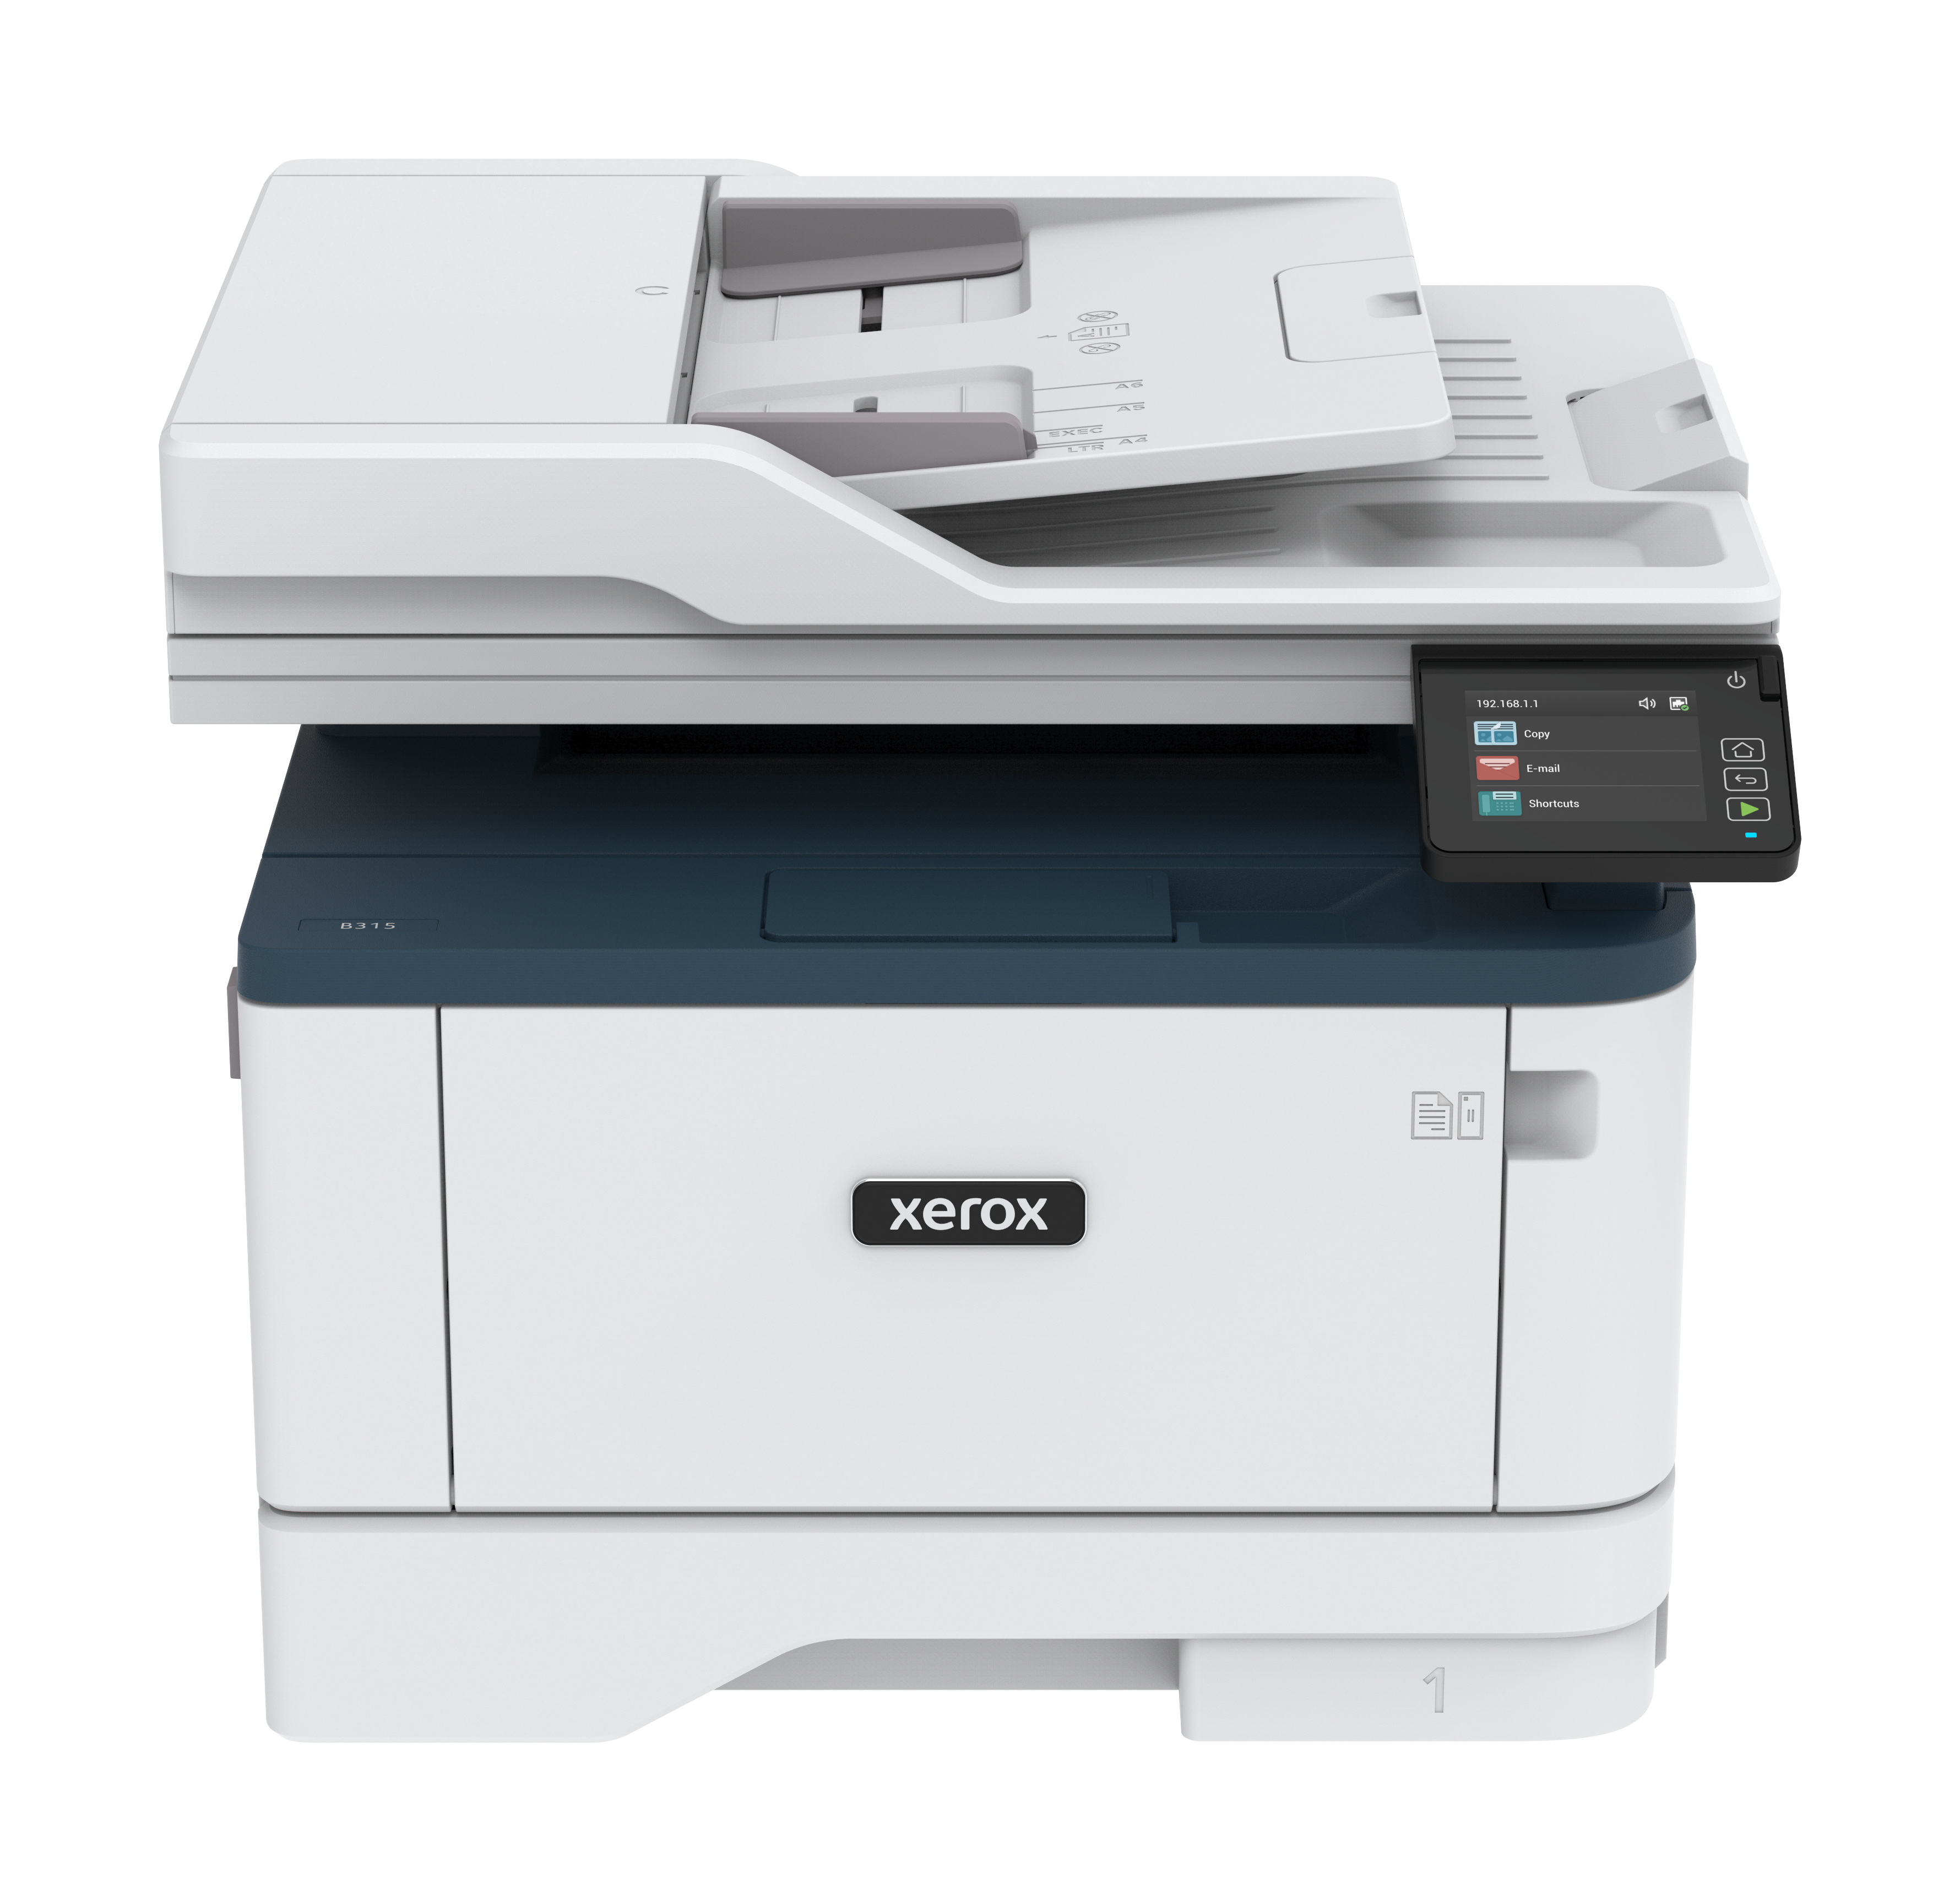 Xerox Xerox B315 A4 40 ppm draadloze dubbelzijdige printer PS3 PCL5e/6 2 laden totaal 350 vel